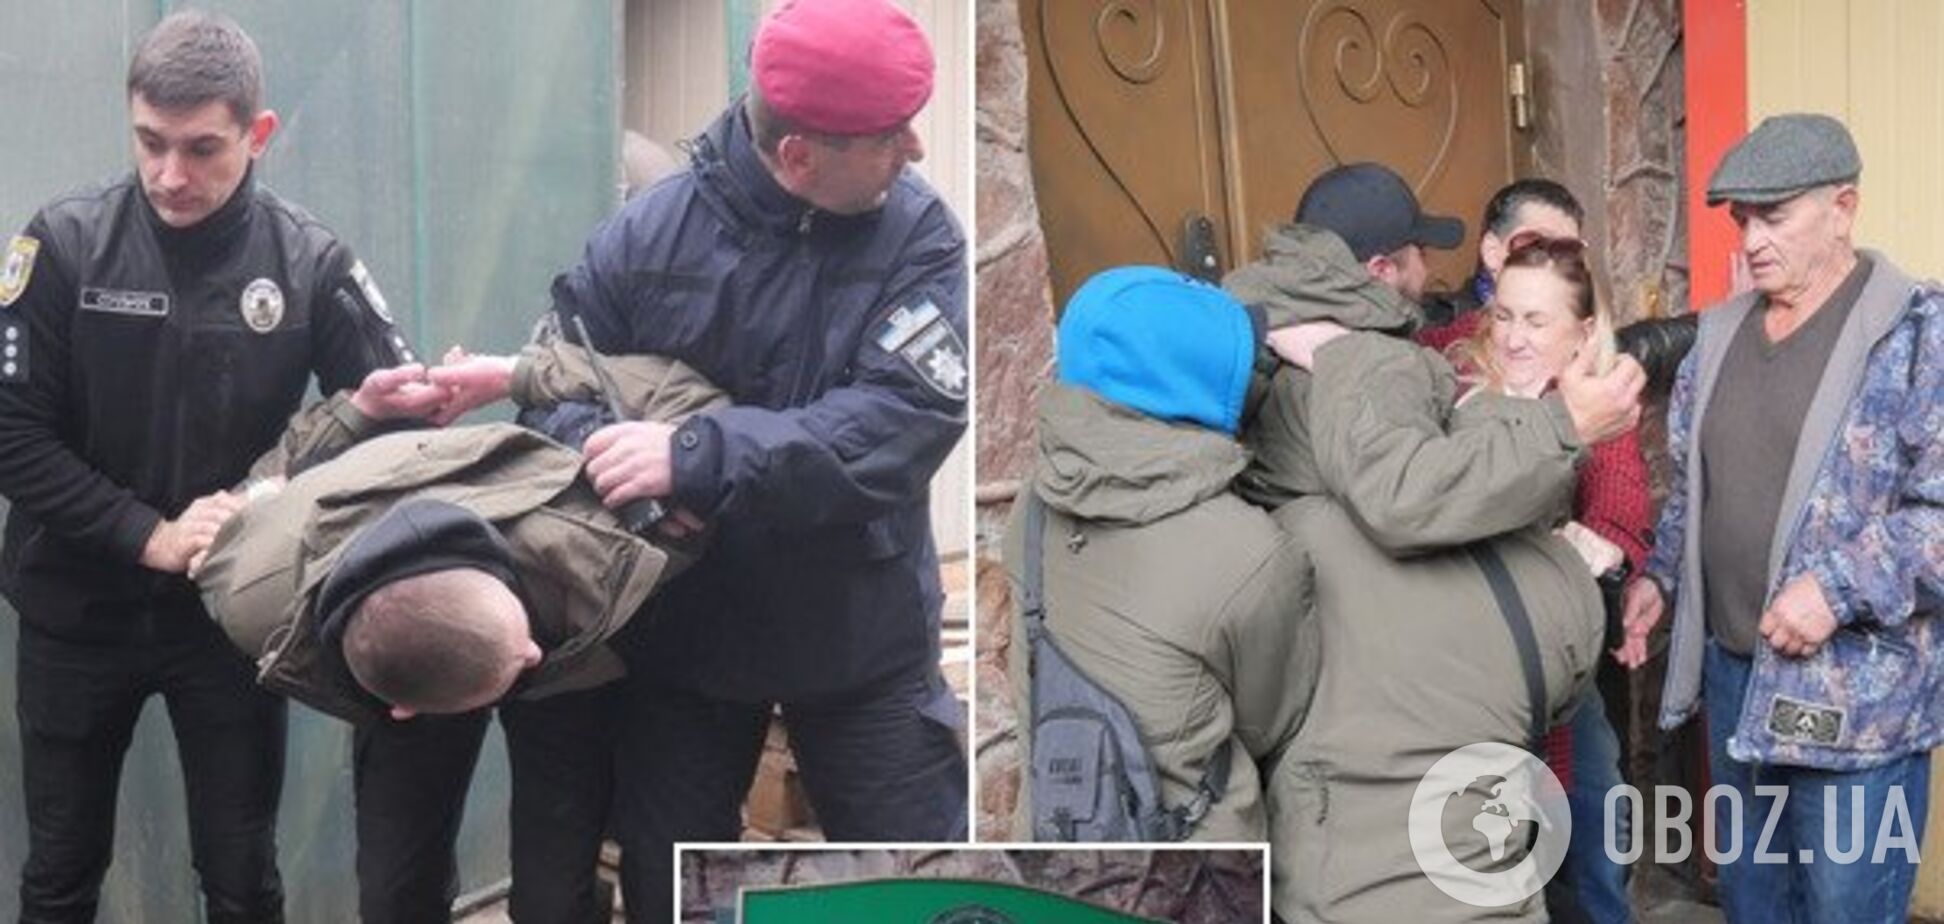 Як рейдери з 'ДНР' захопили ринок в Івано-Франківську і чому їх не бачить місцева поліція